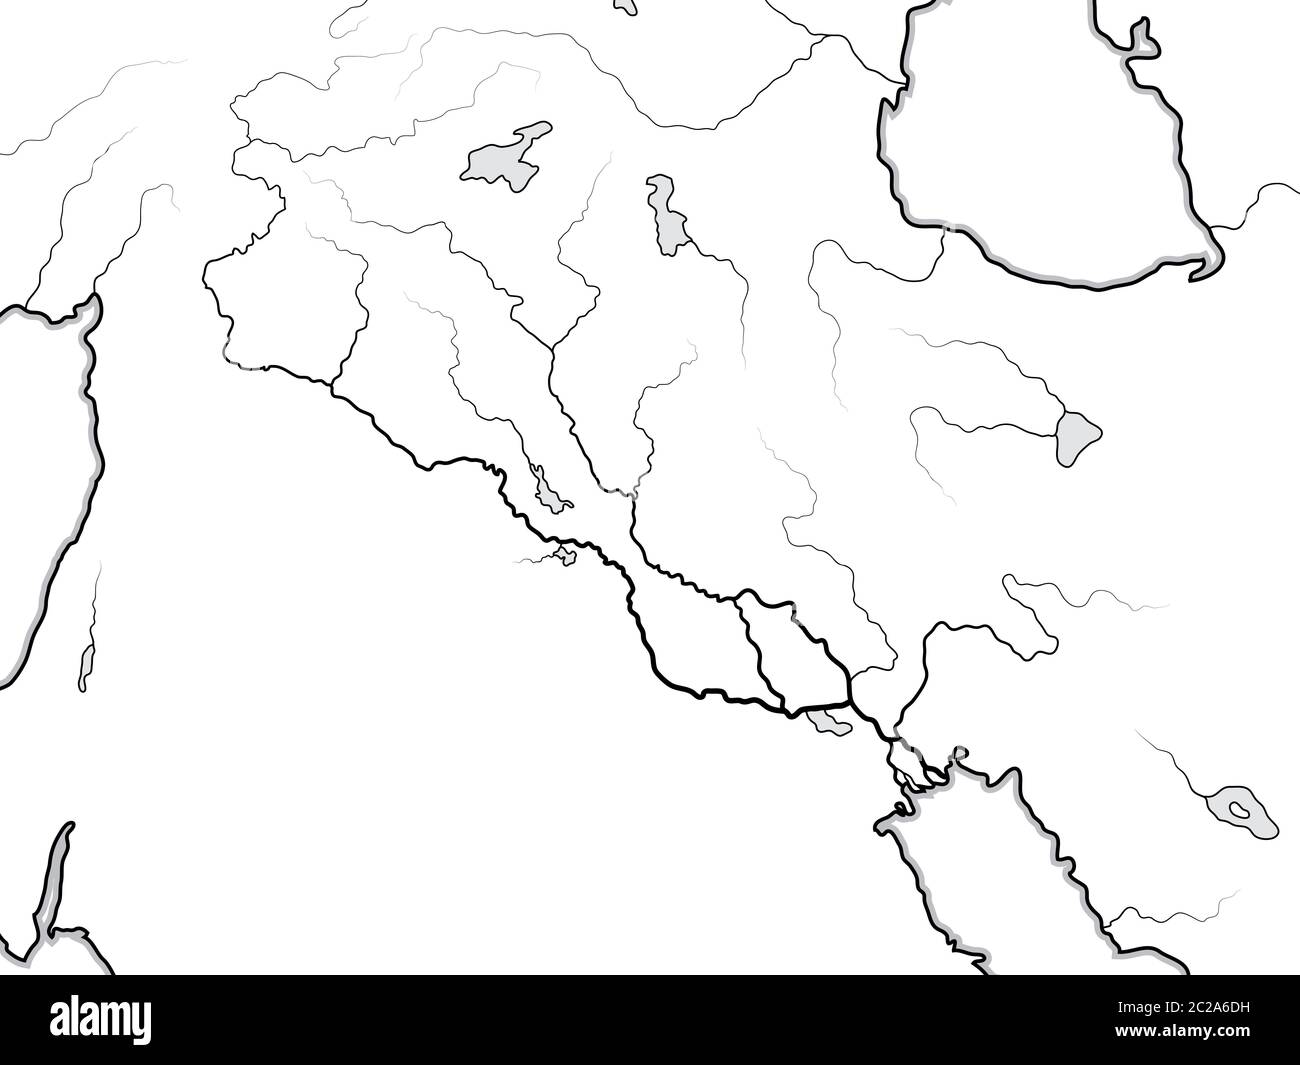 Mappa del mondo DELLA Valle DEL TIGRI & EUFRATE: Iraq, Siria, Armenia, Levante, Medio Oriente, Golfo Persico. Grafico geografico. Foto Stock